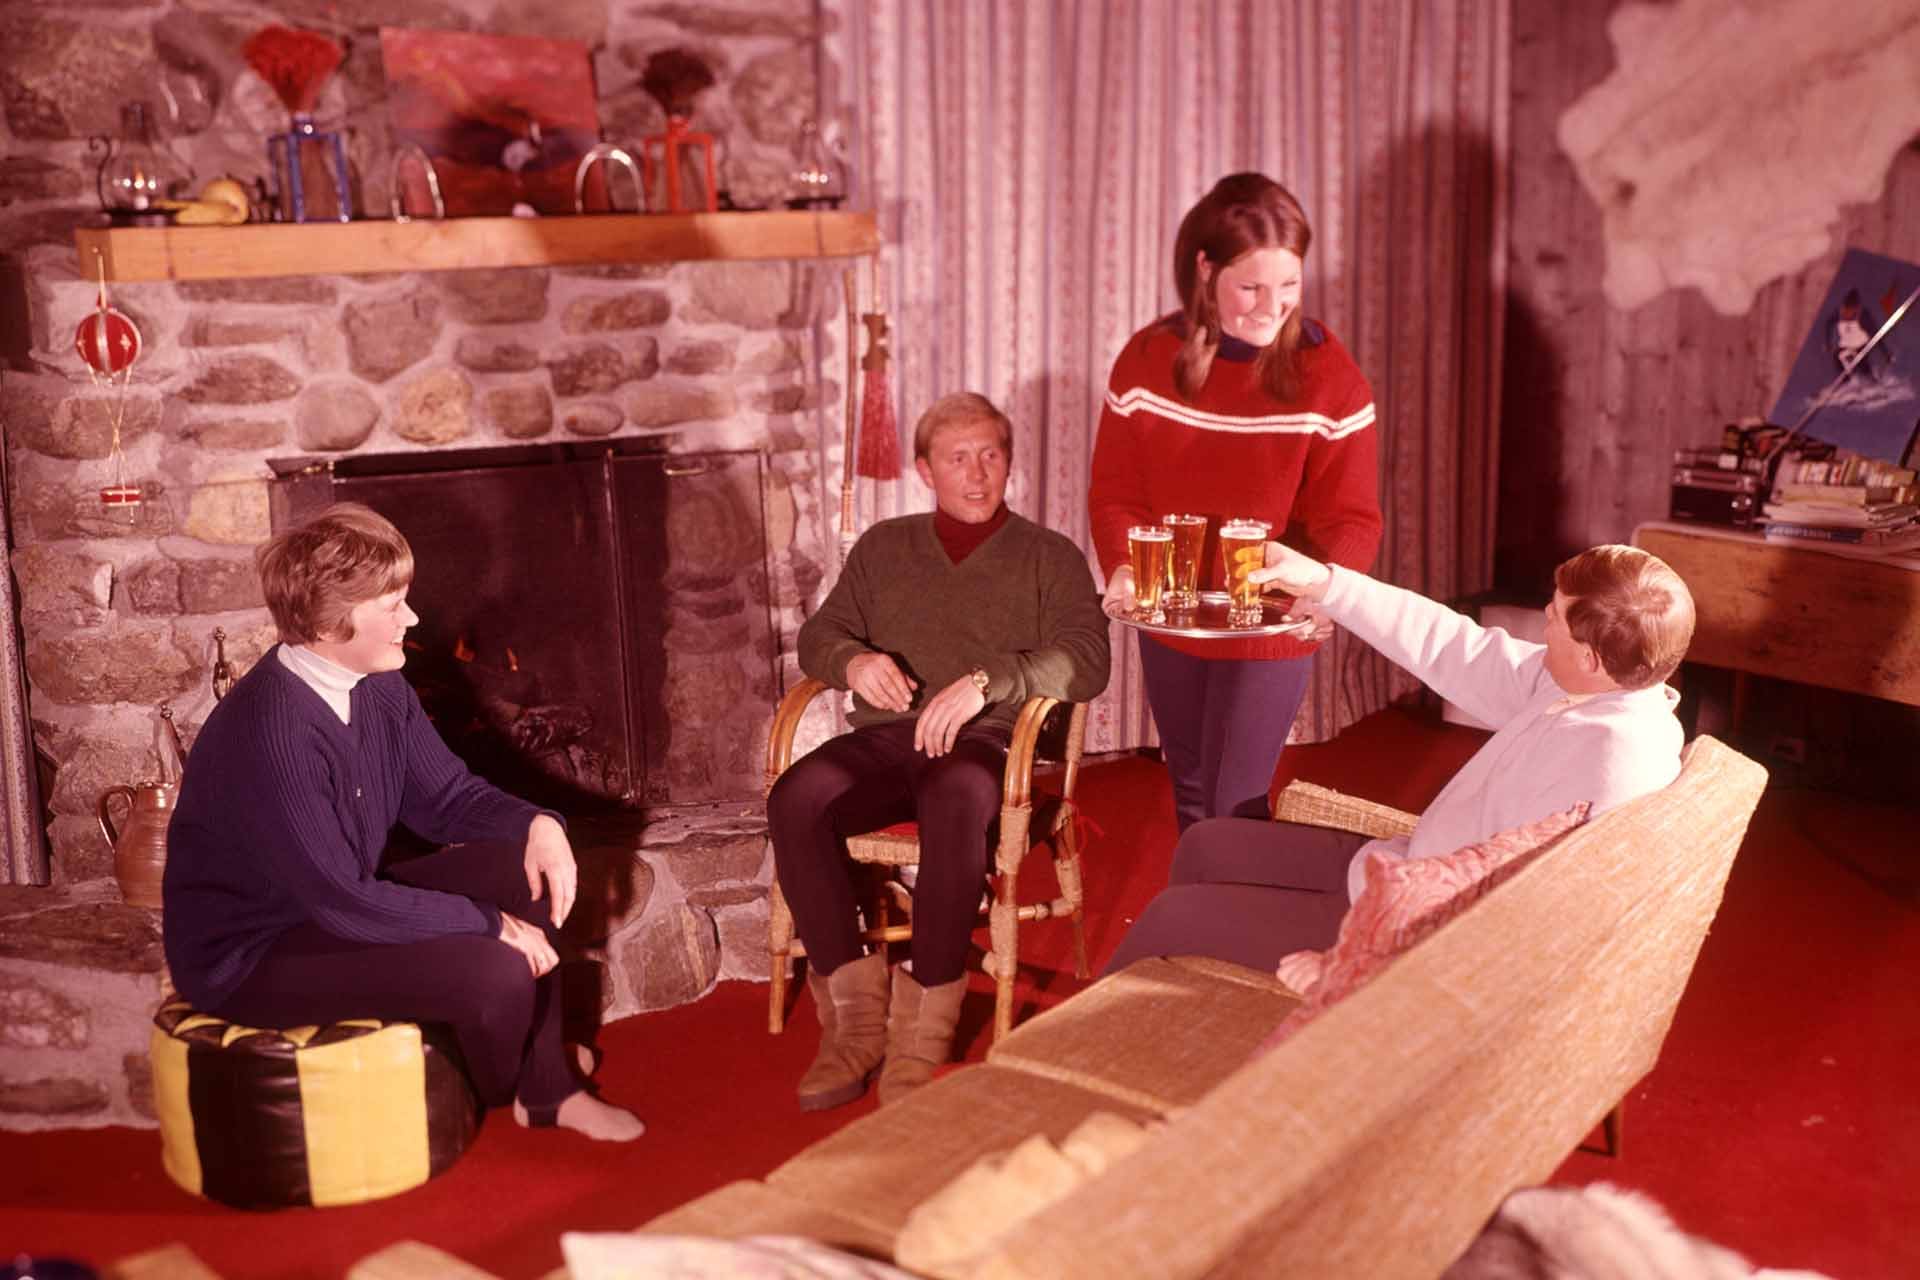 Apres ski beer in 1970s lodge